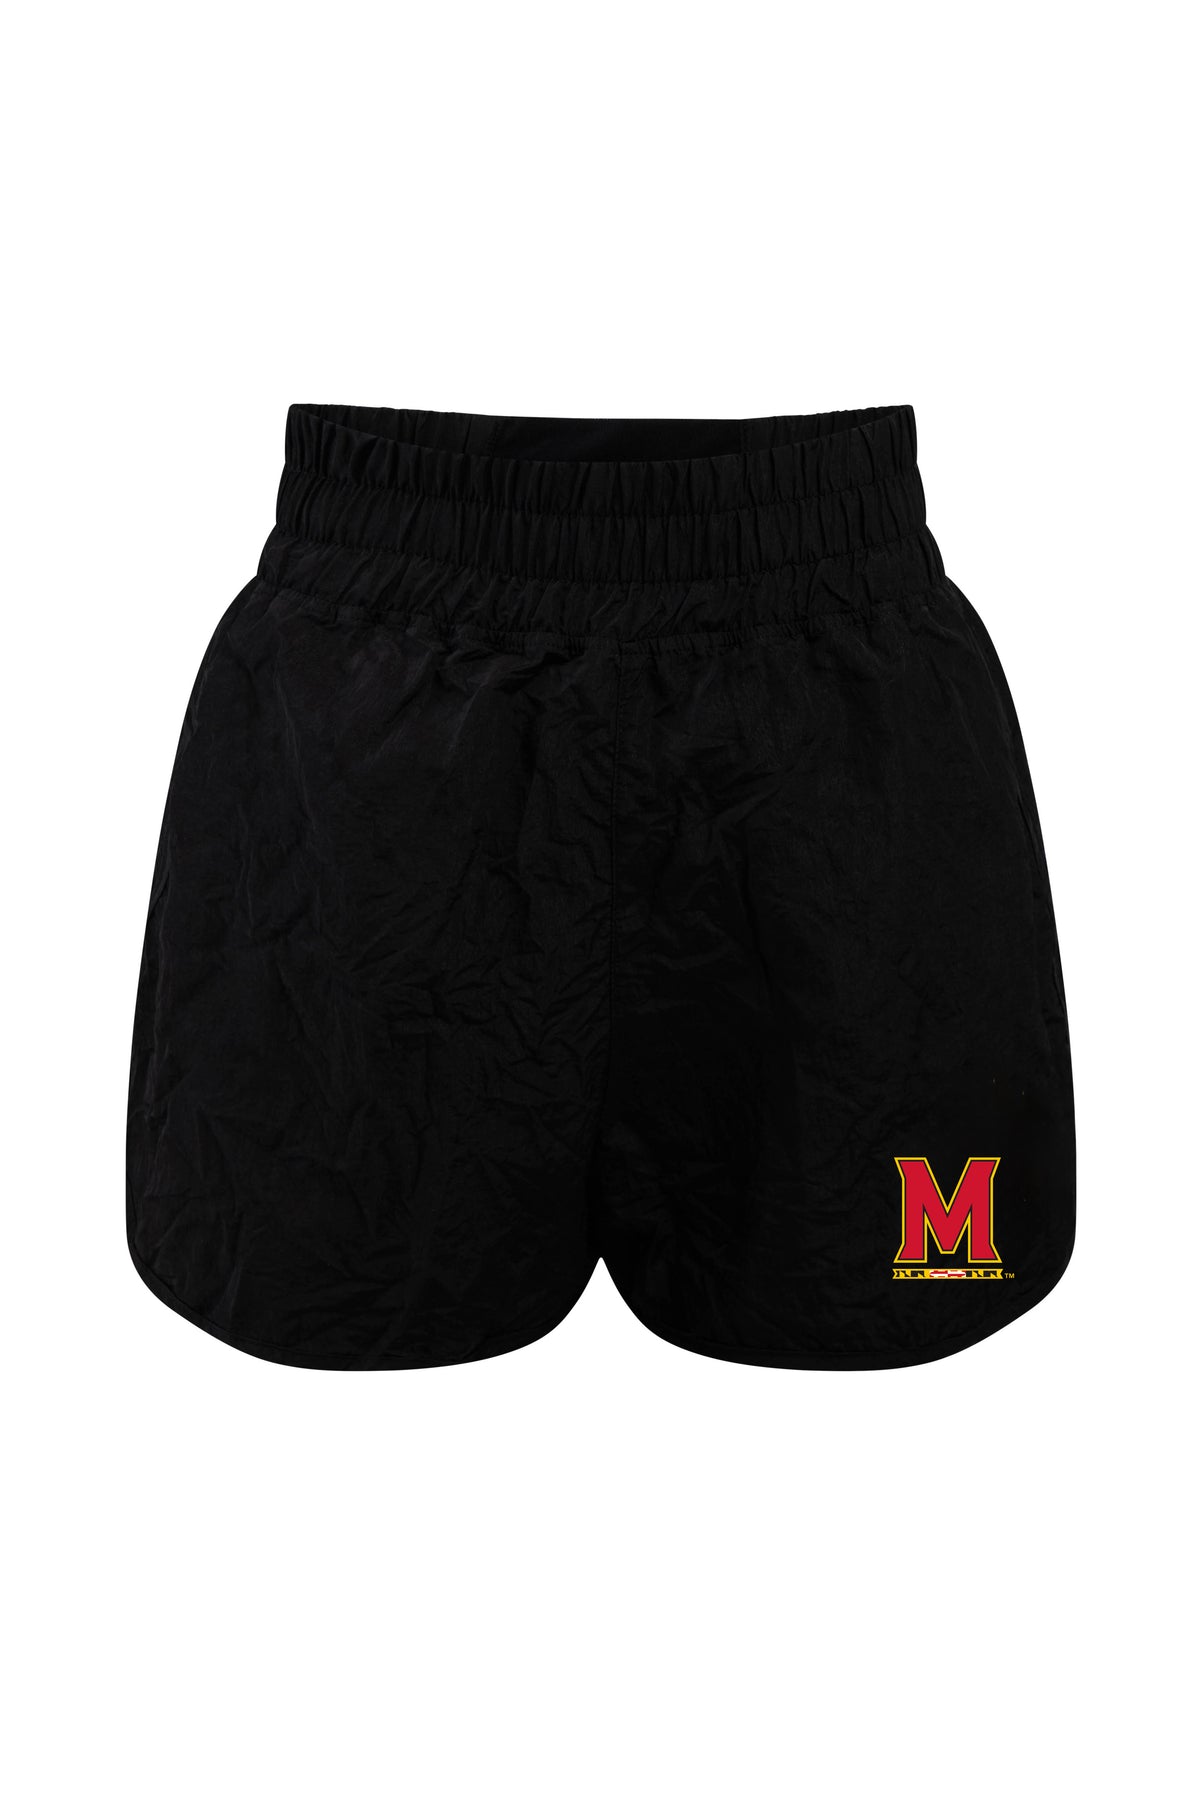 University of Maryland Boxer Short